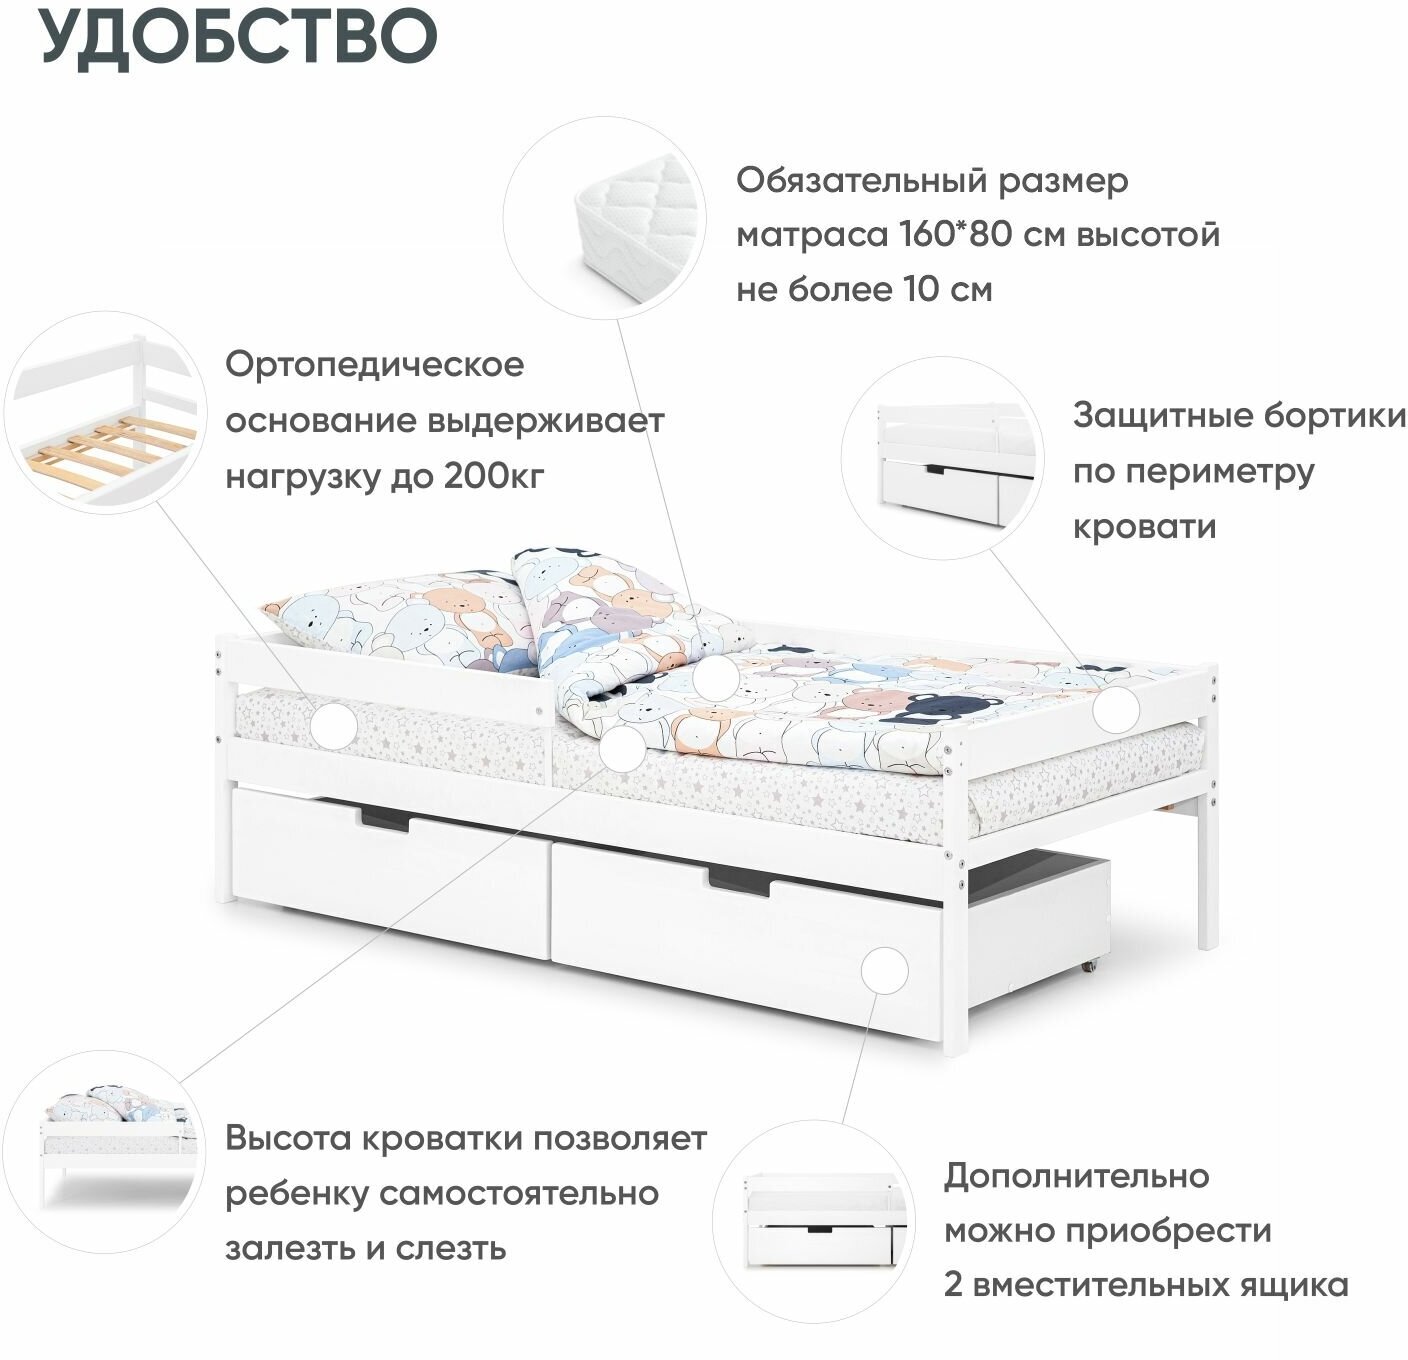 Детская кровать-софа Virke Atta (ECO) белый 160 80, 160х80, тахта, детская кроватка, детская мебель